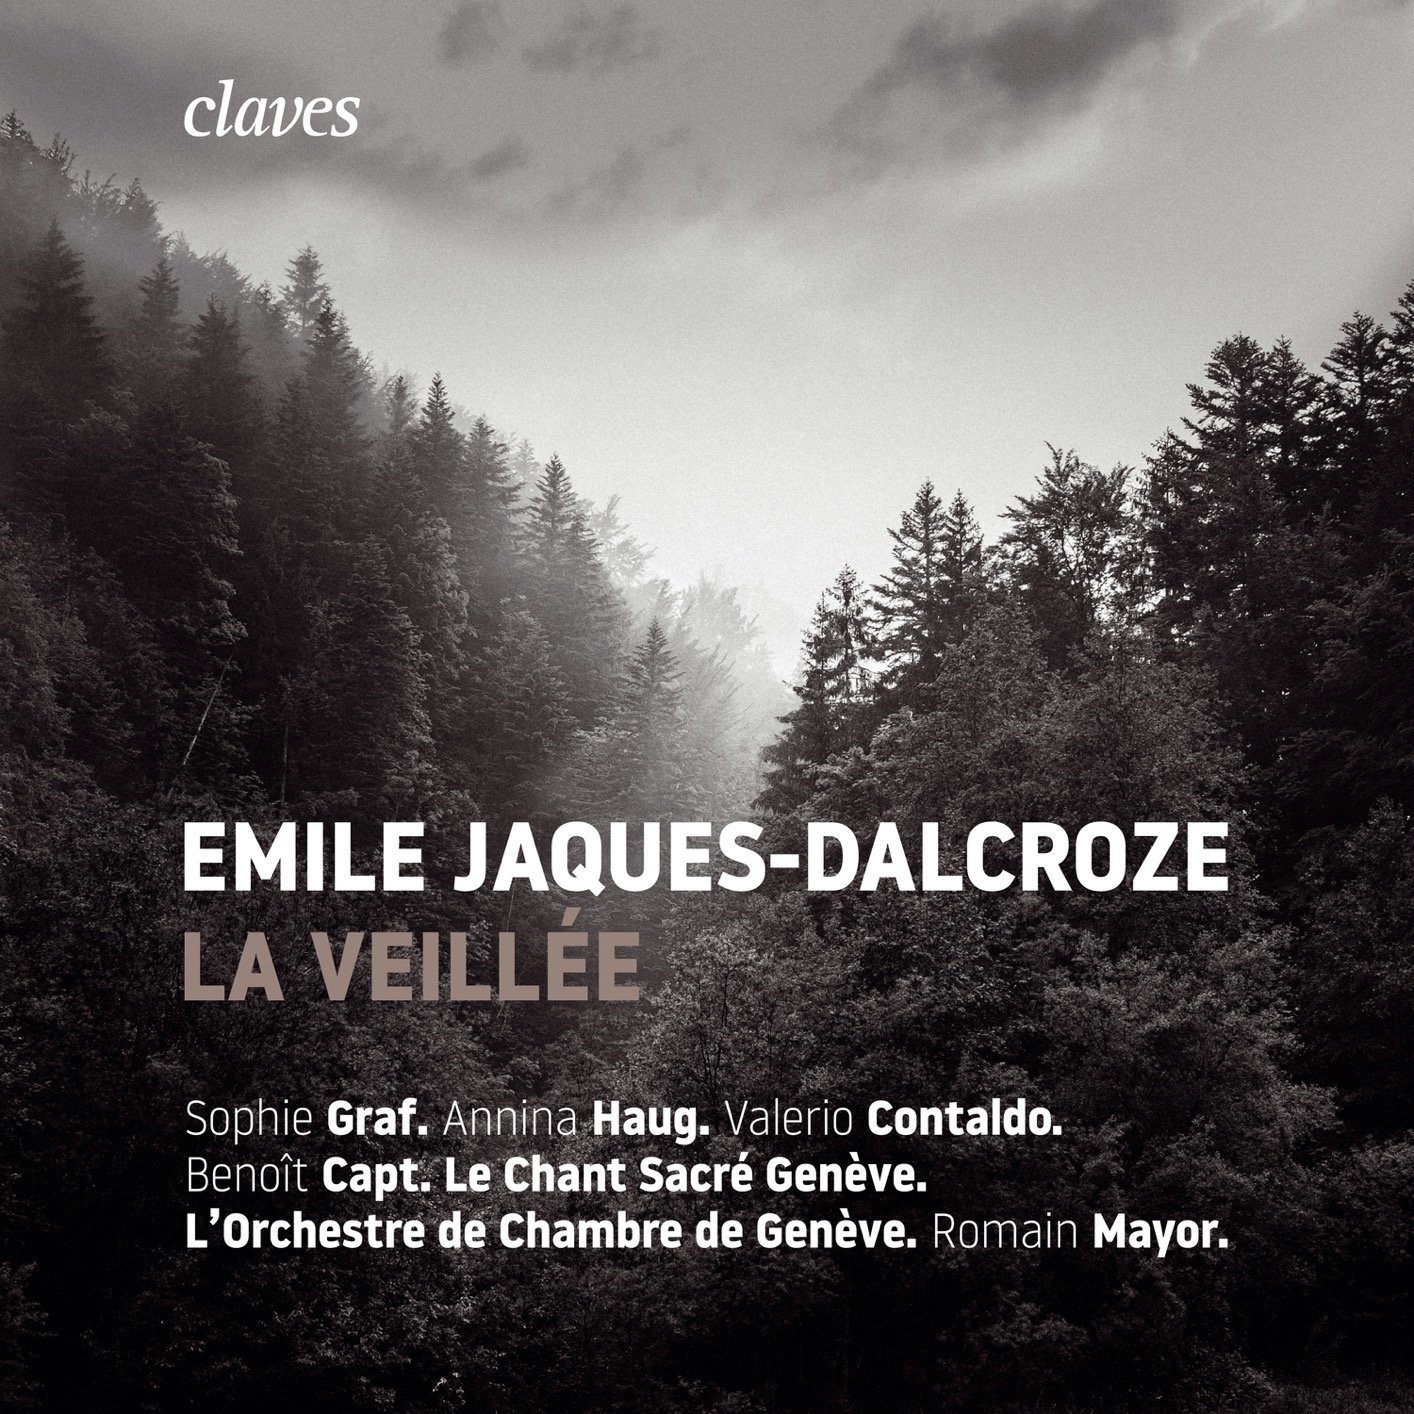 Le Chant Sacre Geneve, Orchestre de Chambre de Geneve & Romain Mayor – Emile Jaques-Dalcroze: La Veillee (2019) [FLAC 24bit/192kHz]